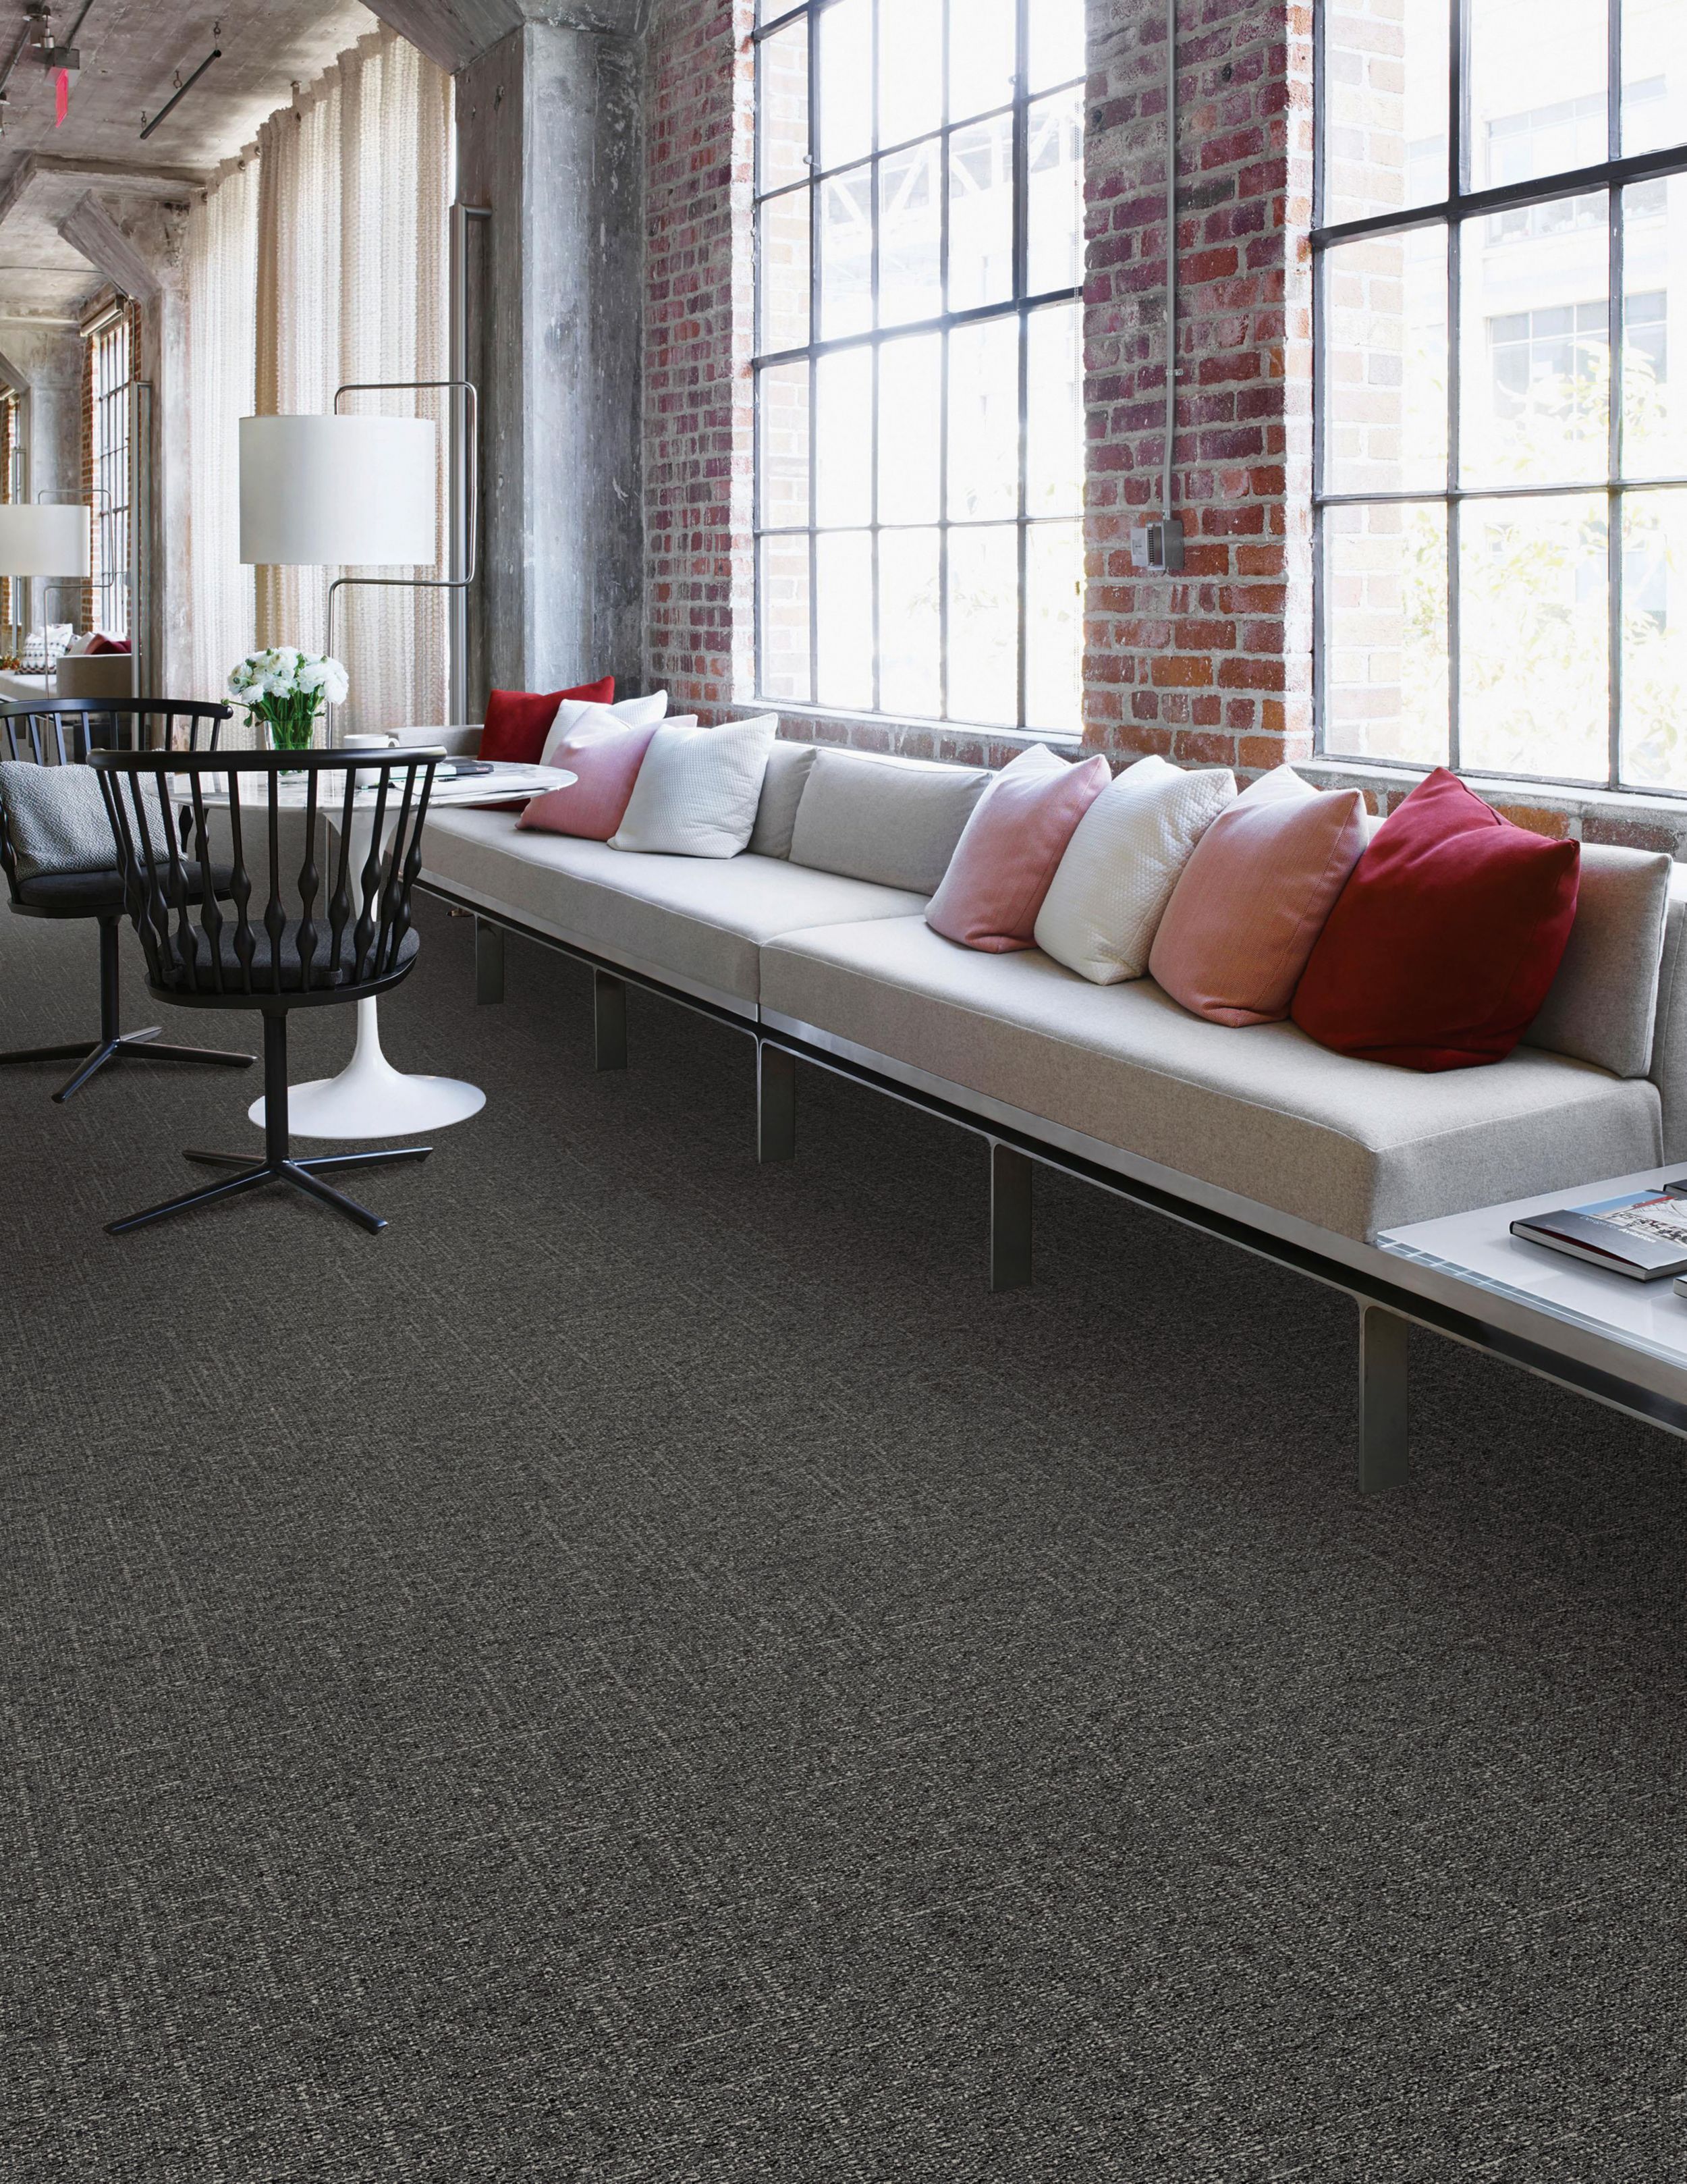 Interface DL902 carpet tile in public space with long couch numéro d’image 1